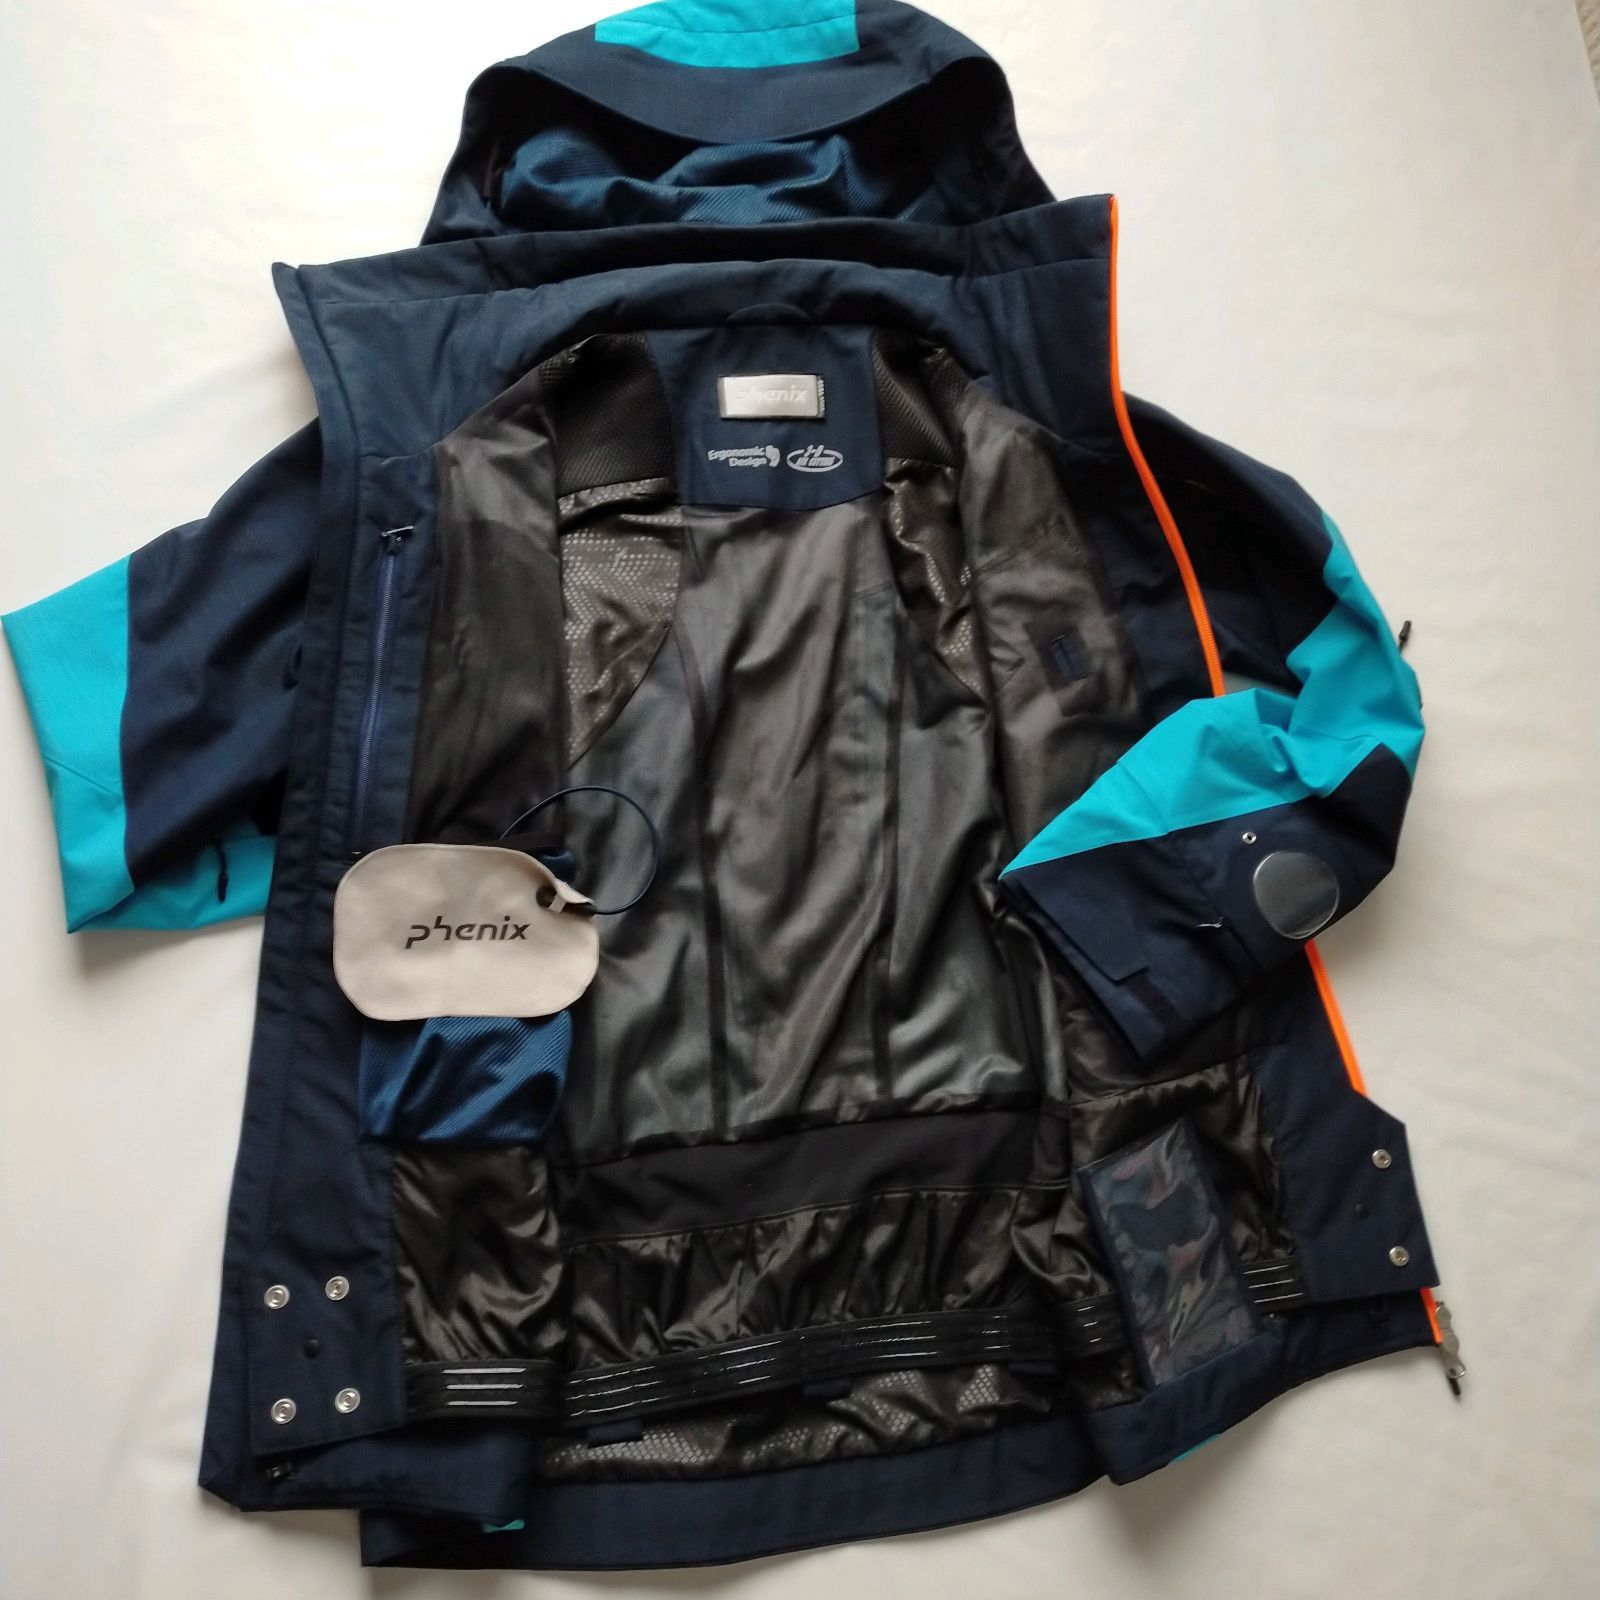 フェニックススキーウェア ジャケット/上着 キッズ服(男の子用) 100cm~ ベビー・キッズ ショッピング半額